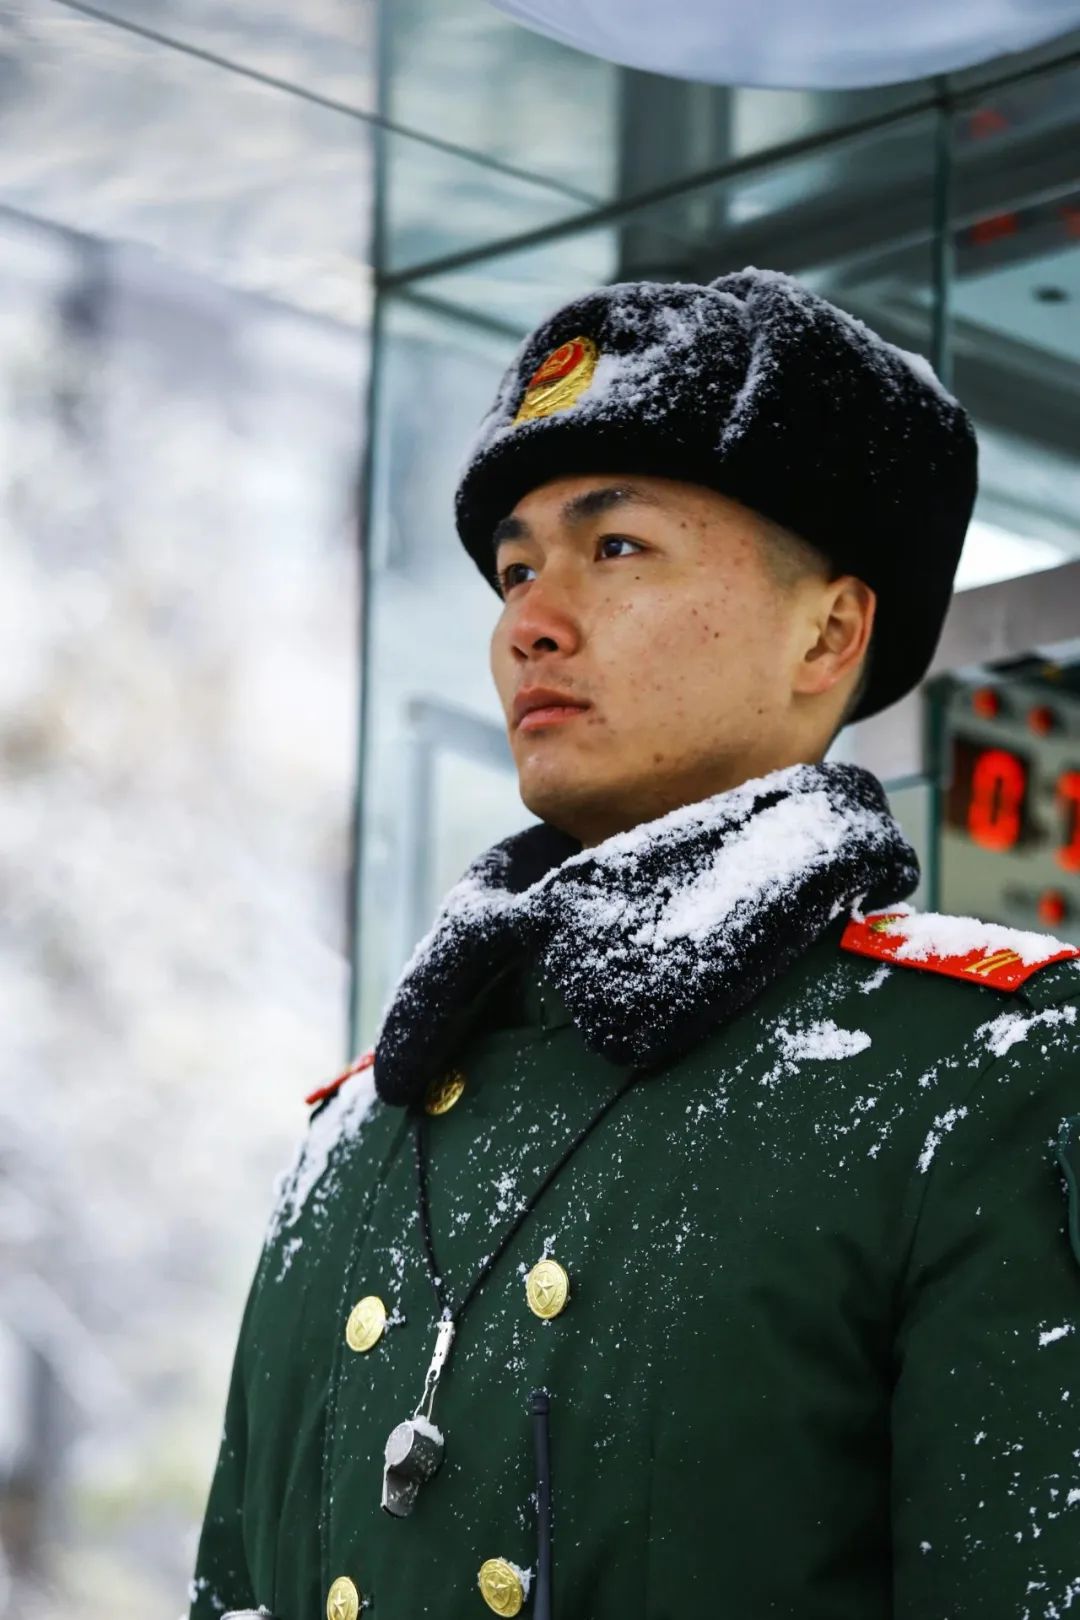 军人生活故事:你那里雪停了吗?这些照片被网友称为最美雪景!